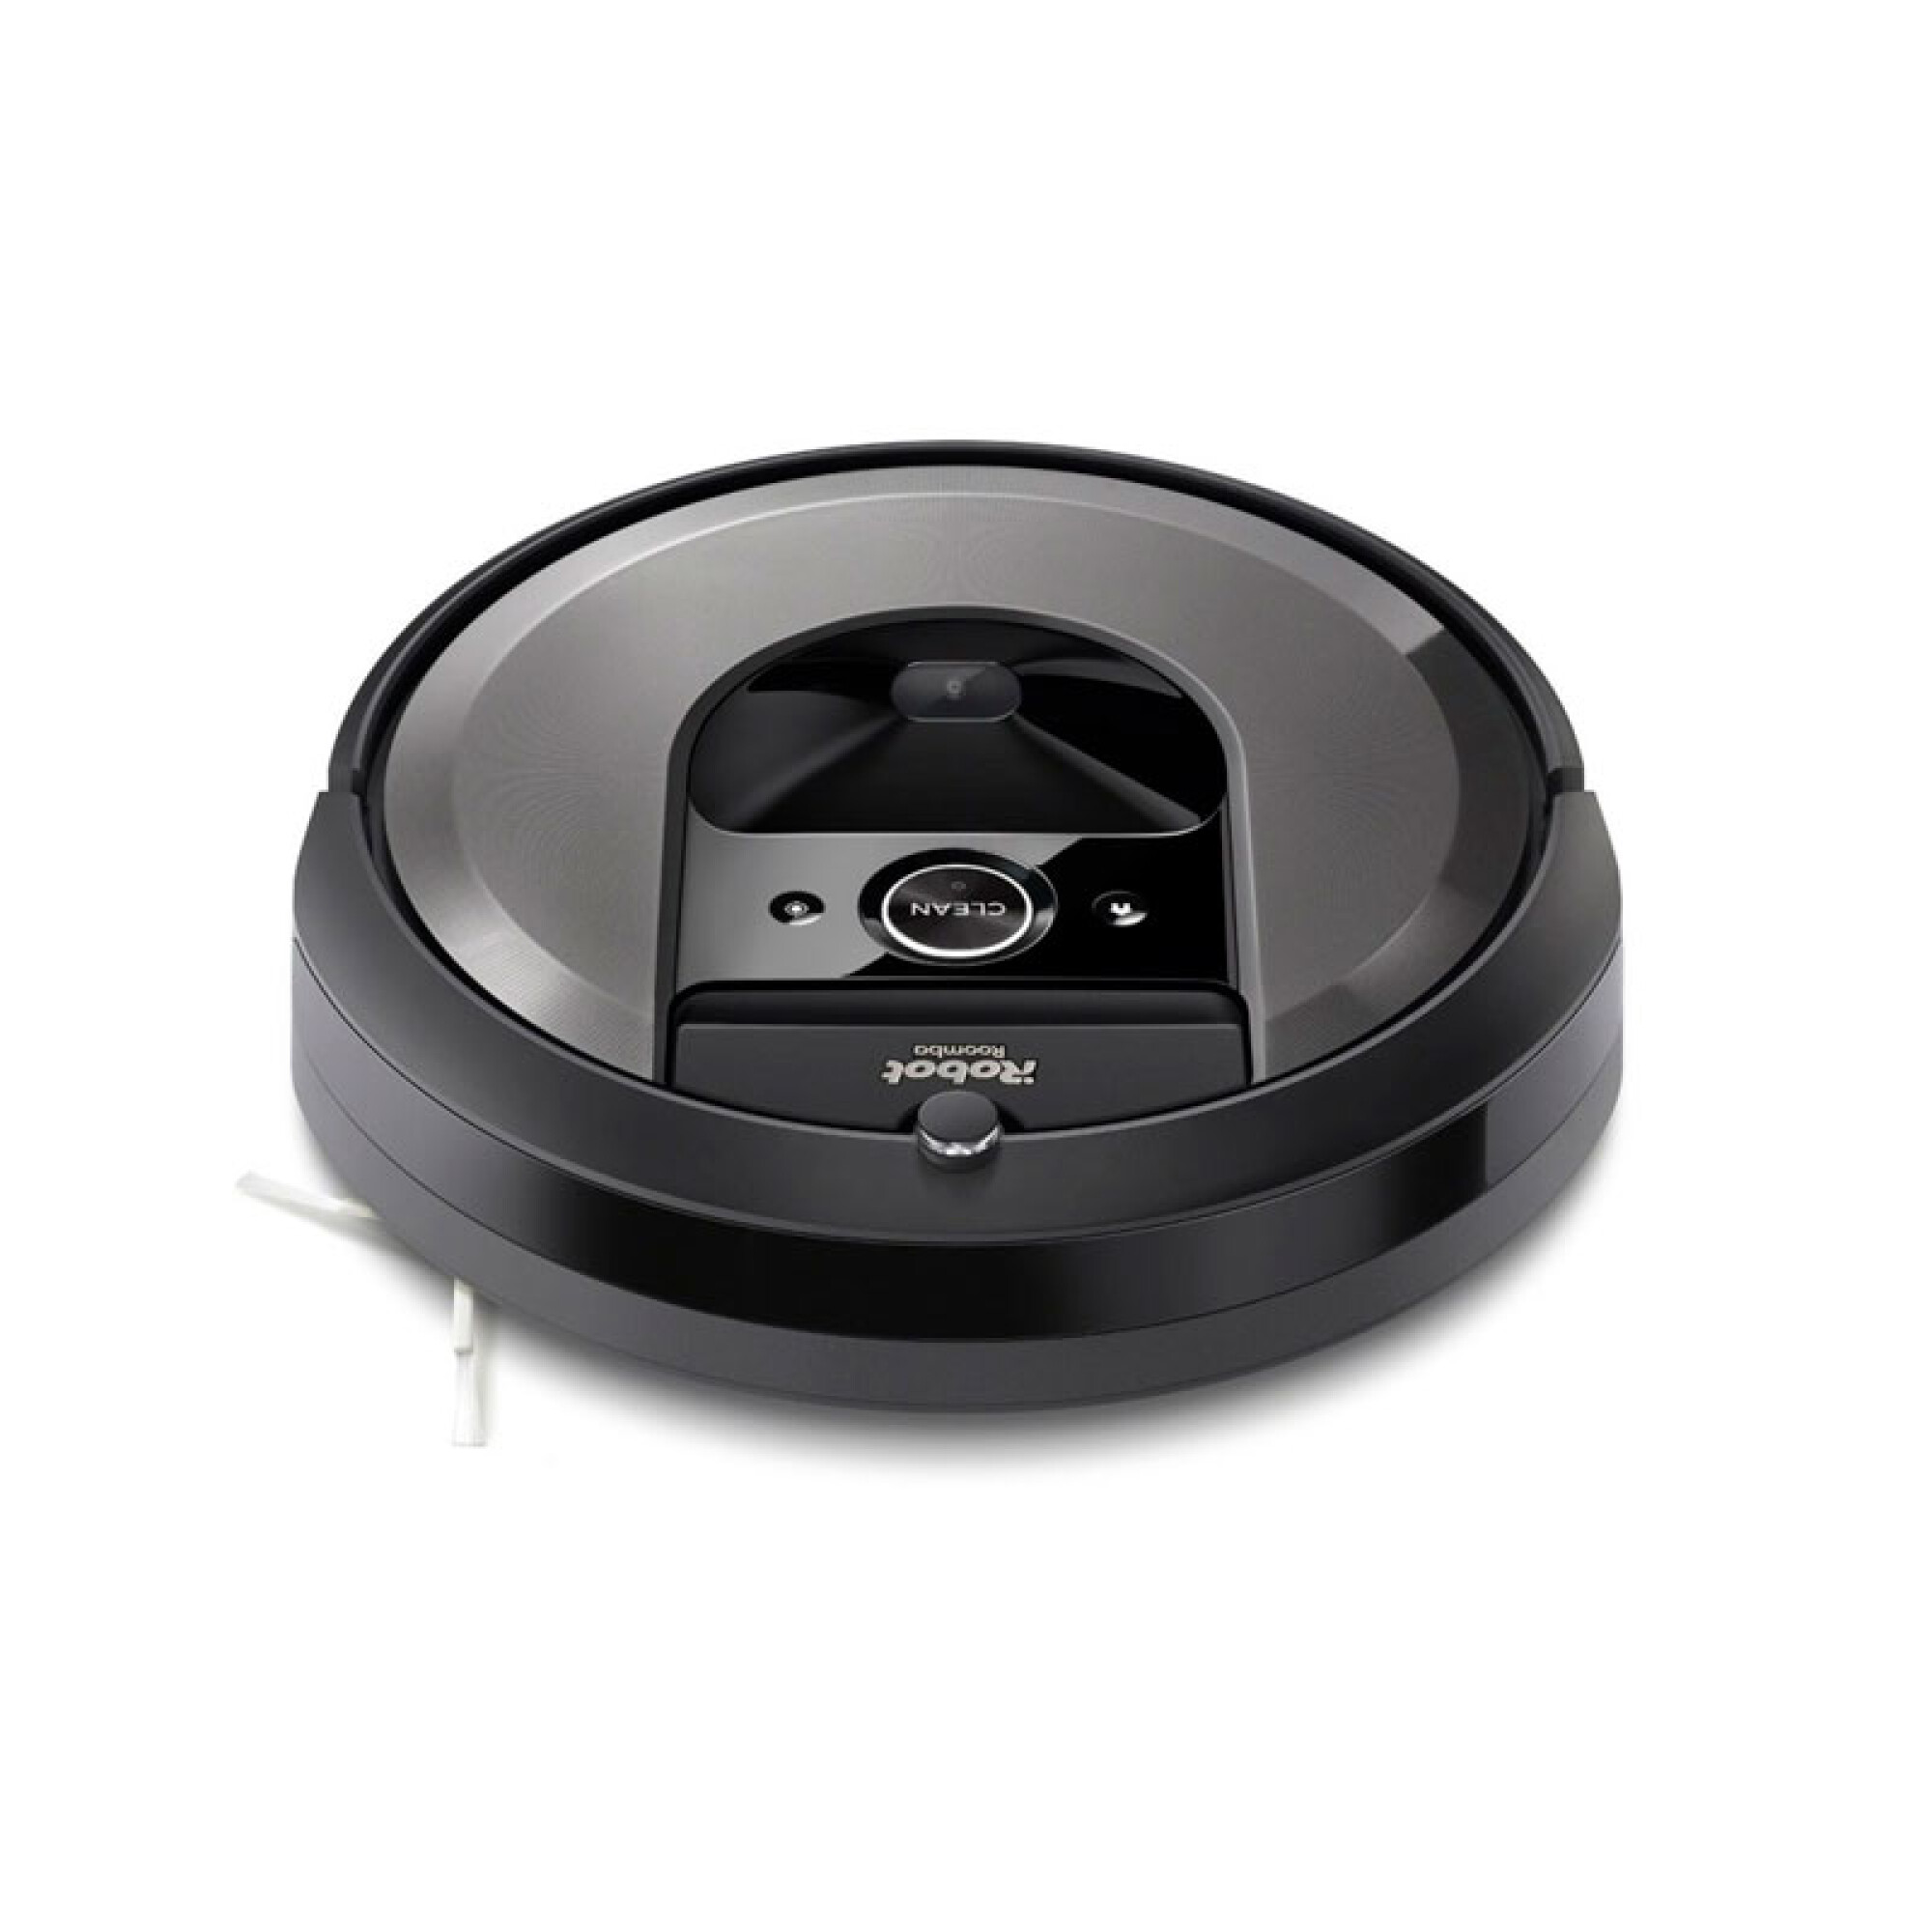 Aspiradora iRobot Roomba. : Hogar y Cocina 